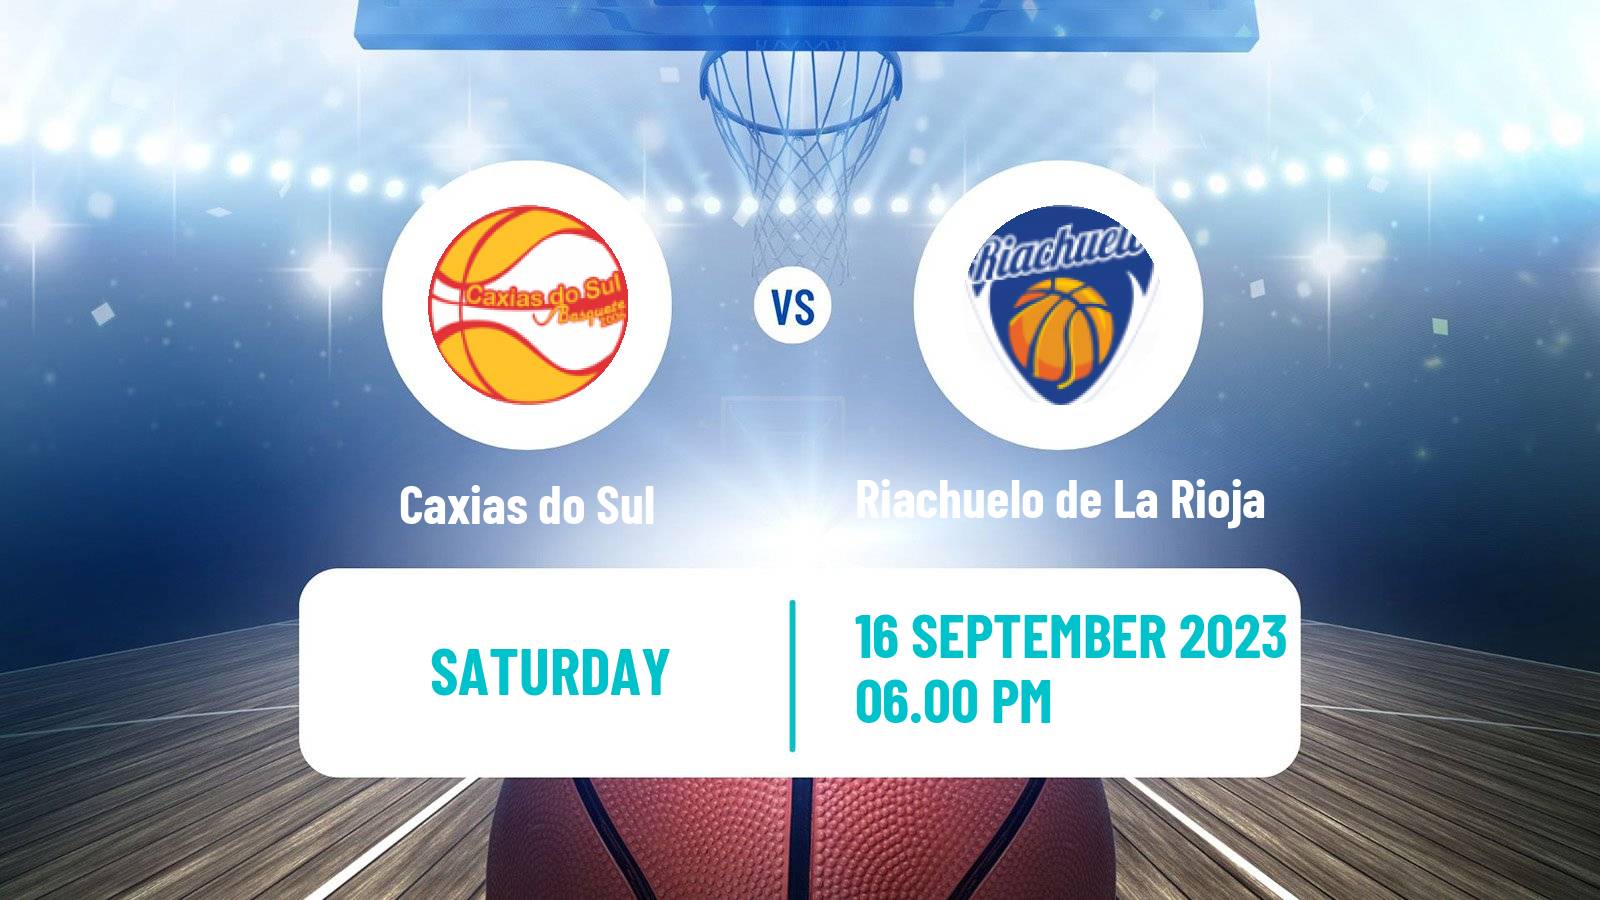 Basketball Club Friendly Basketball Caxias do Sul - Riachuelo de La Rioja